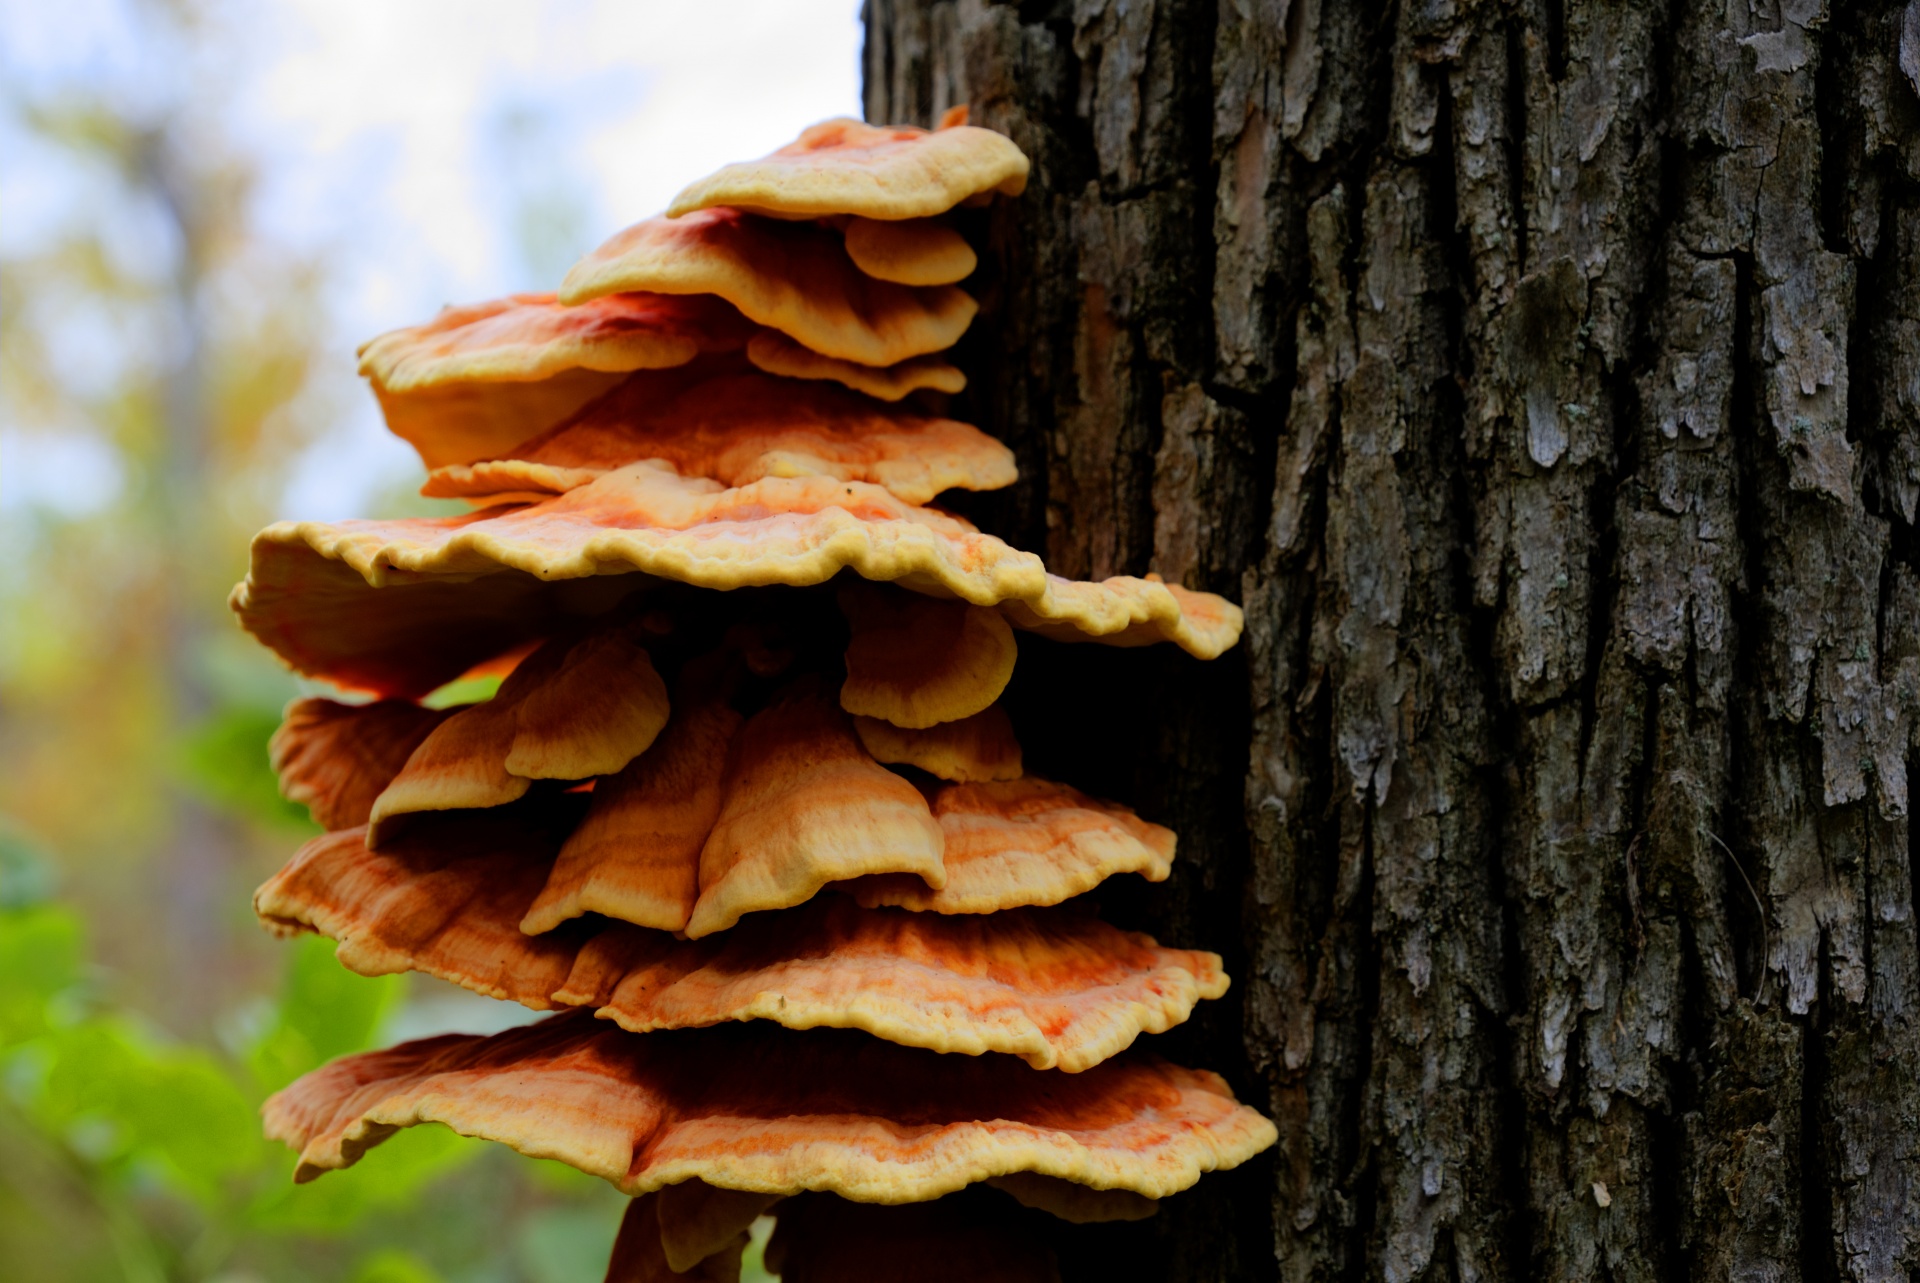 Tree Fungus Layers